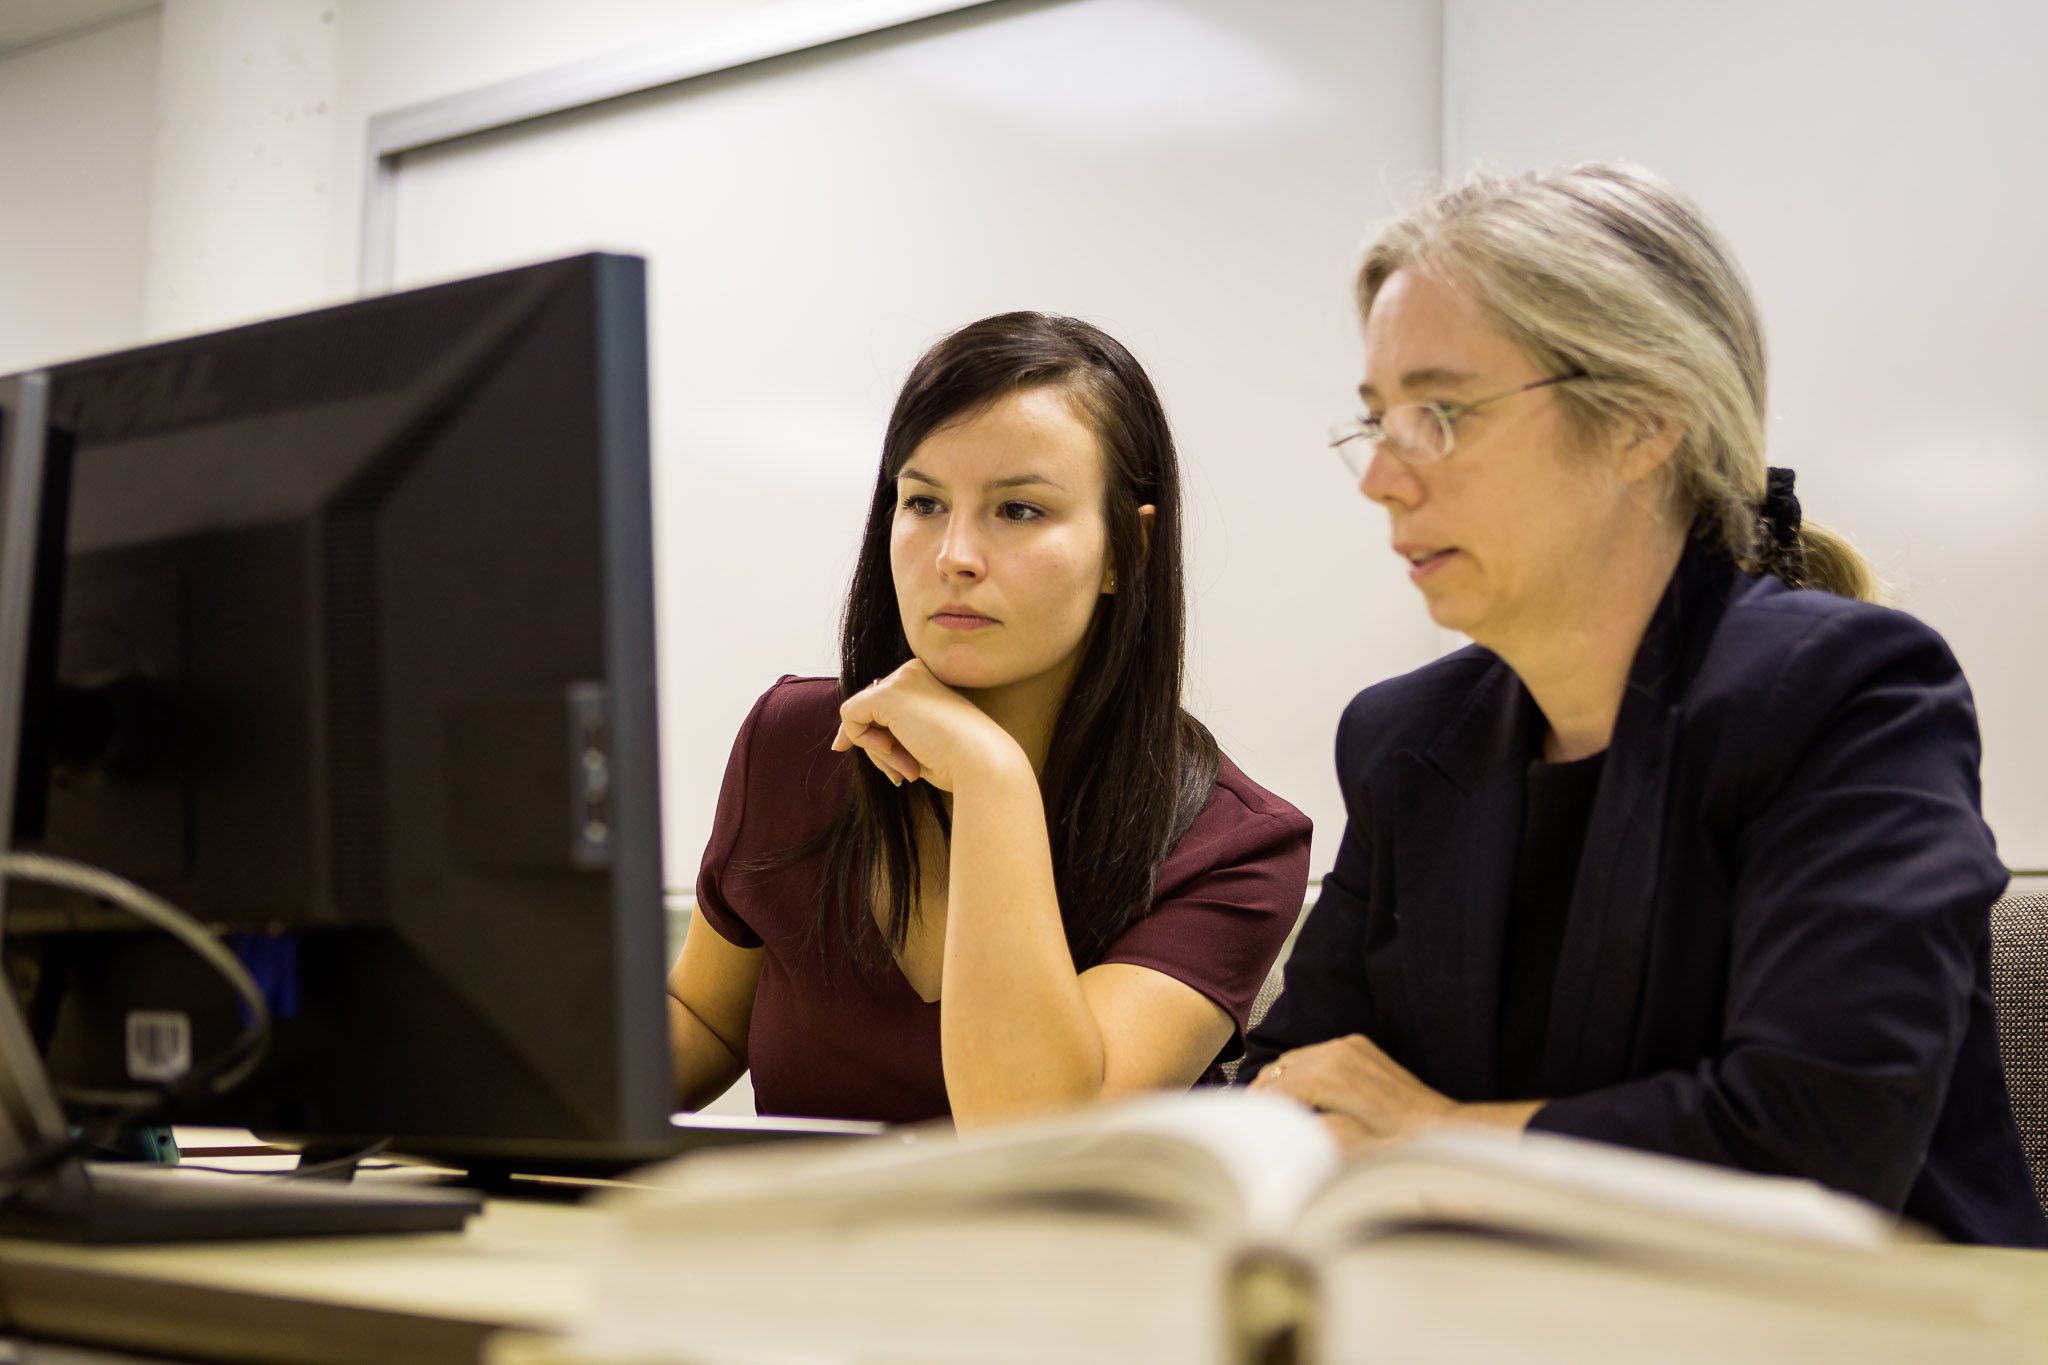 Dans une salle de classe blanche, deux individus d’apparence féminine analysent ensemble le contenu affiché à l’écran d’un ordinateur. Photo.